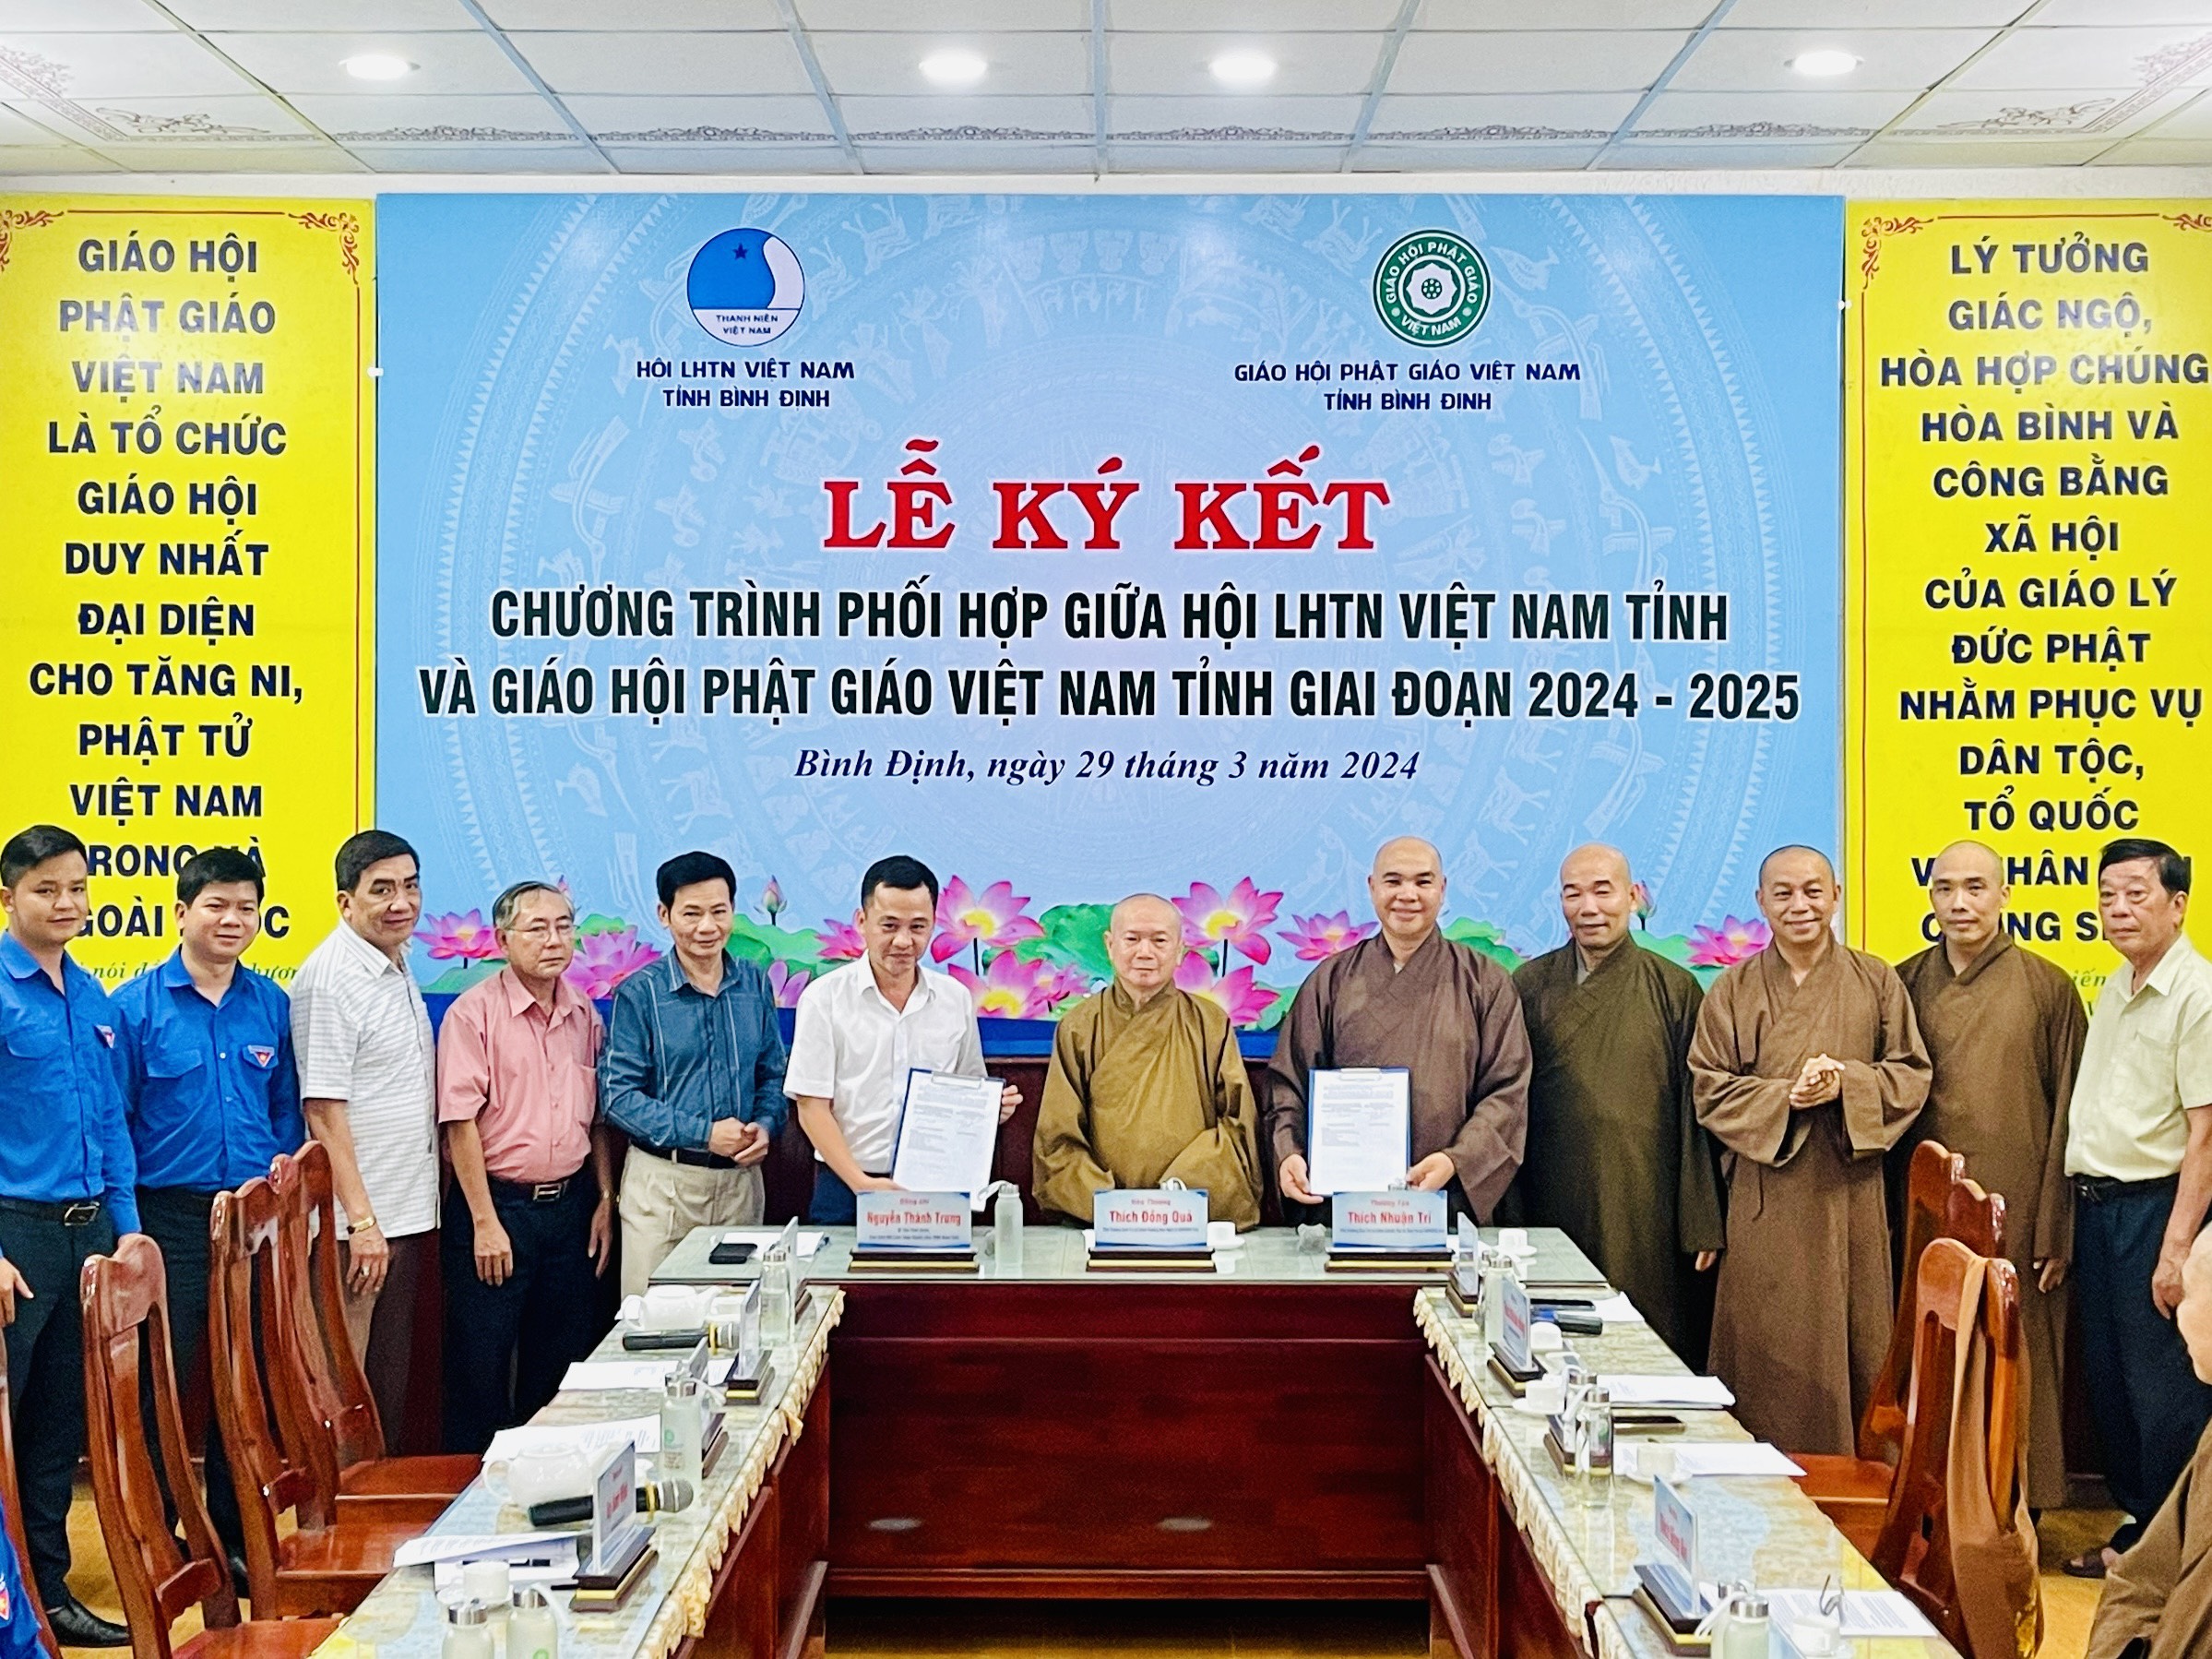 Lễ ký kết chương trình phối hợp giữa Hội LHTN tỉnh và GHPGVN tỉnh Bình Định.